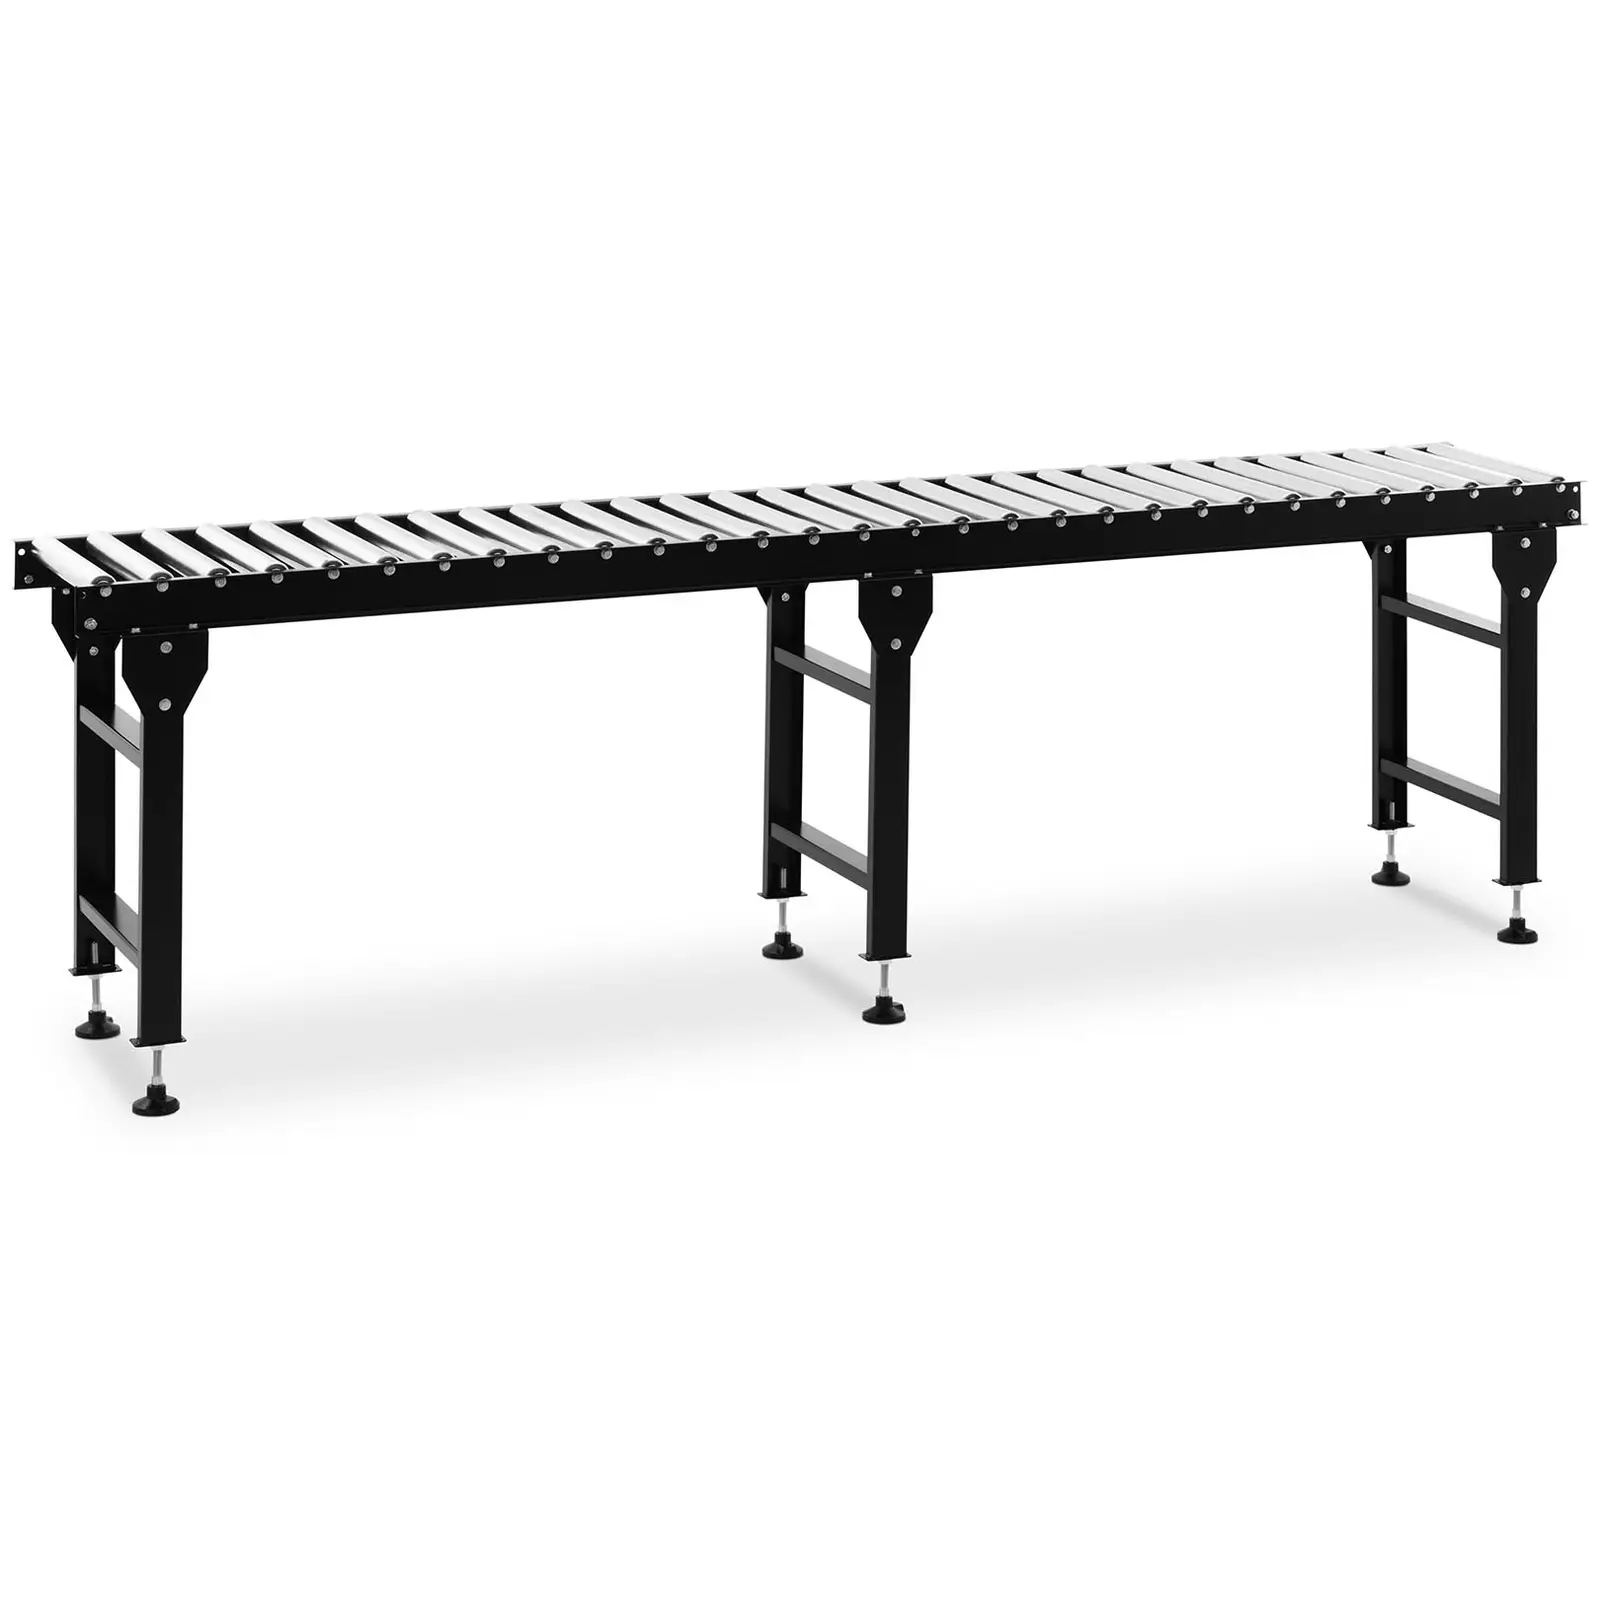 Τραπέζι κυλίνδρων - 400 kg - 300 cm - 30 κύλινδροι - ρυθμιζόμενο ύψος